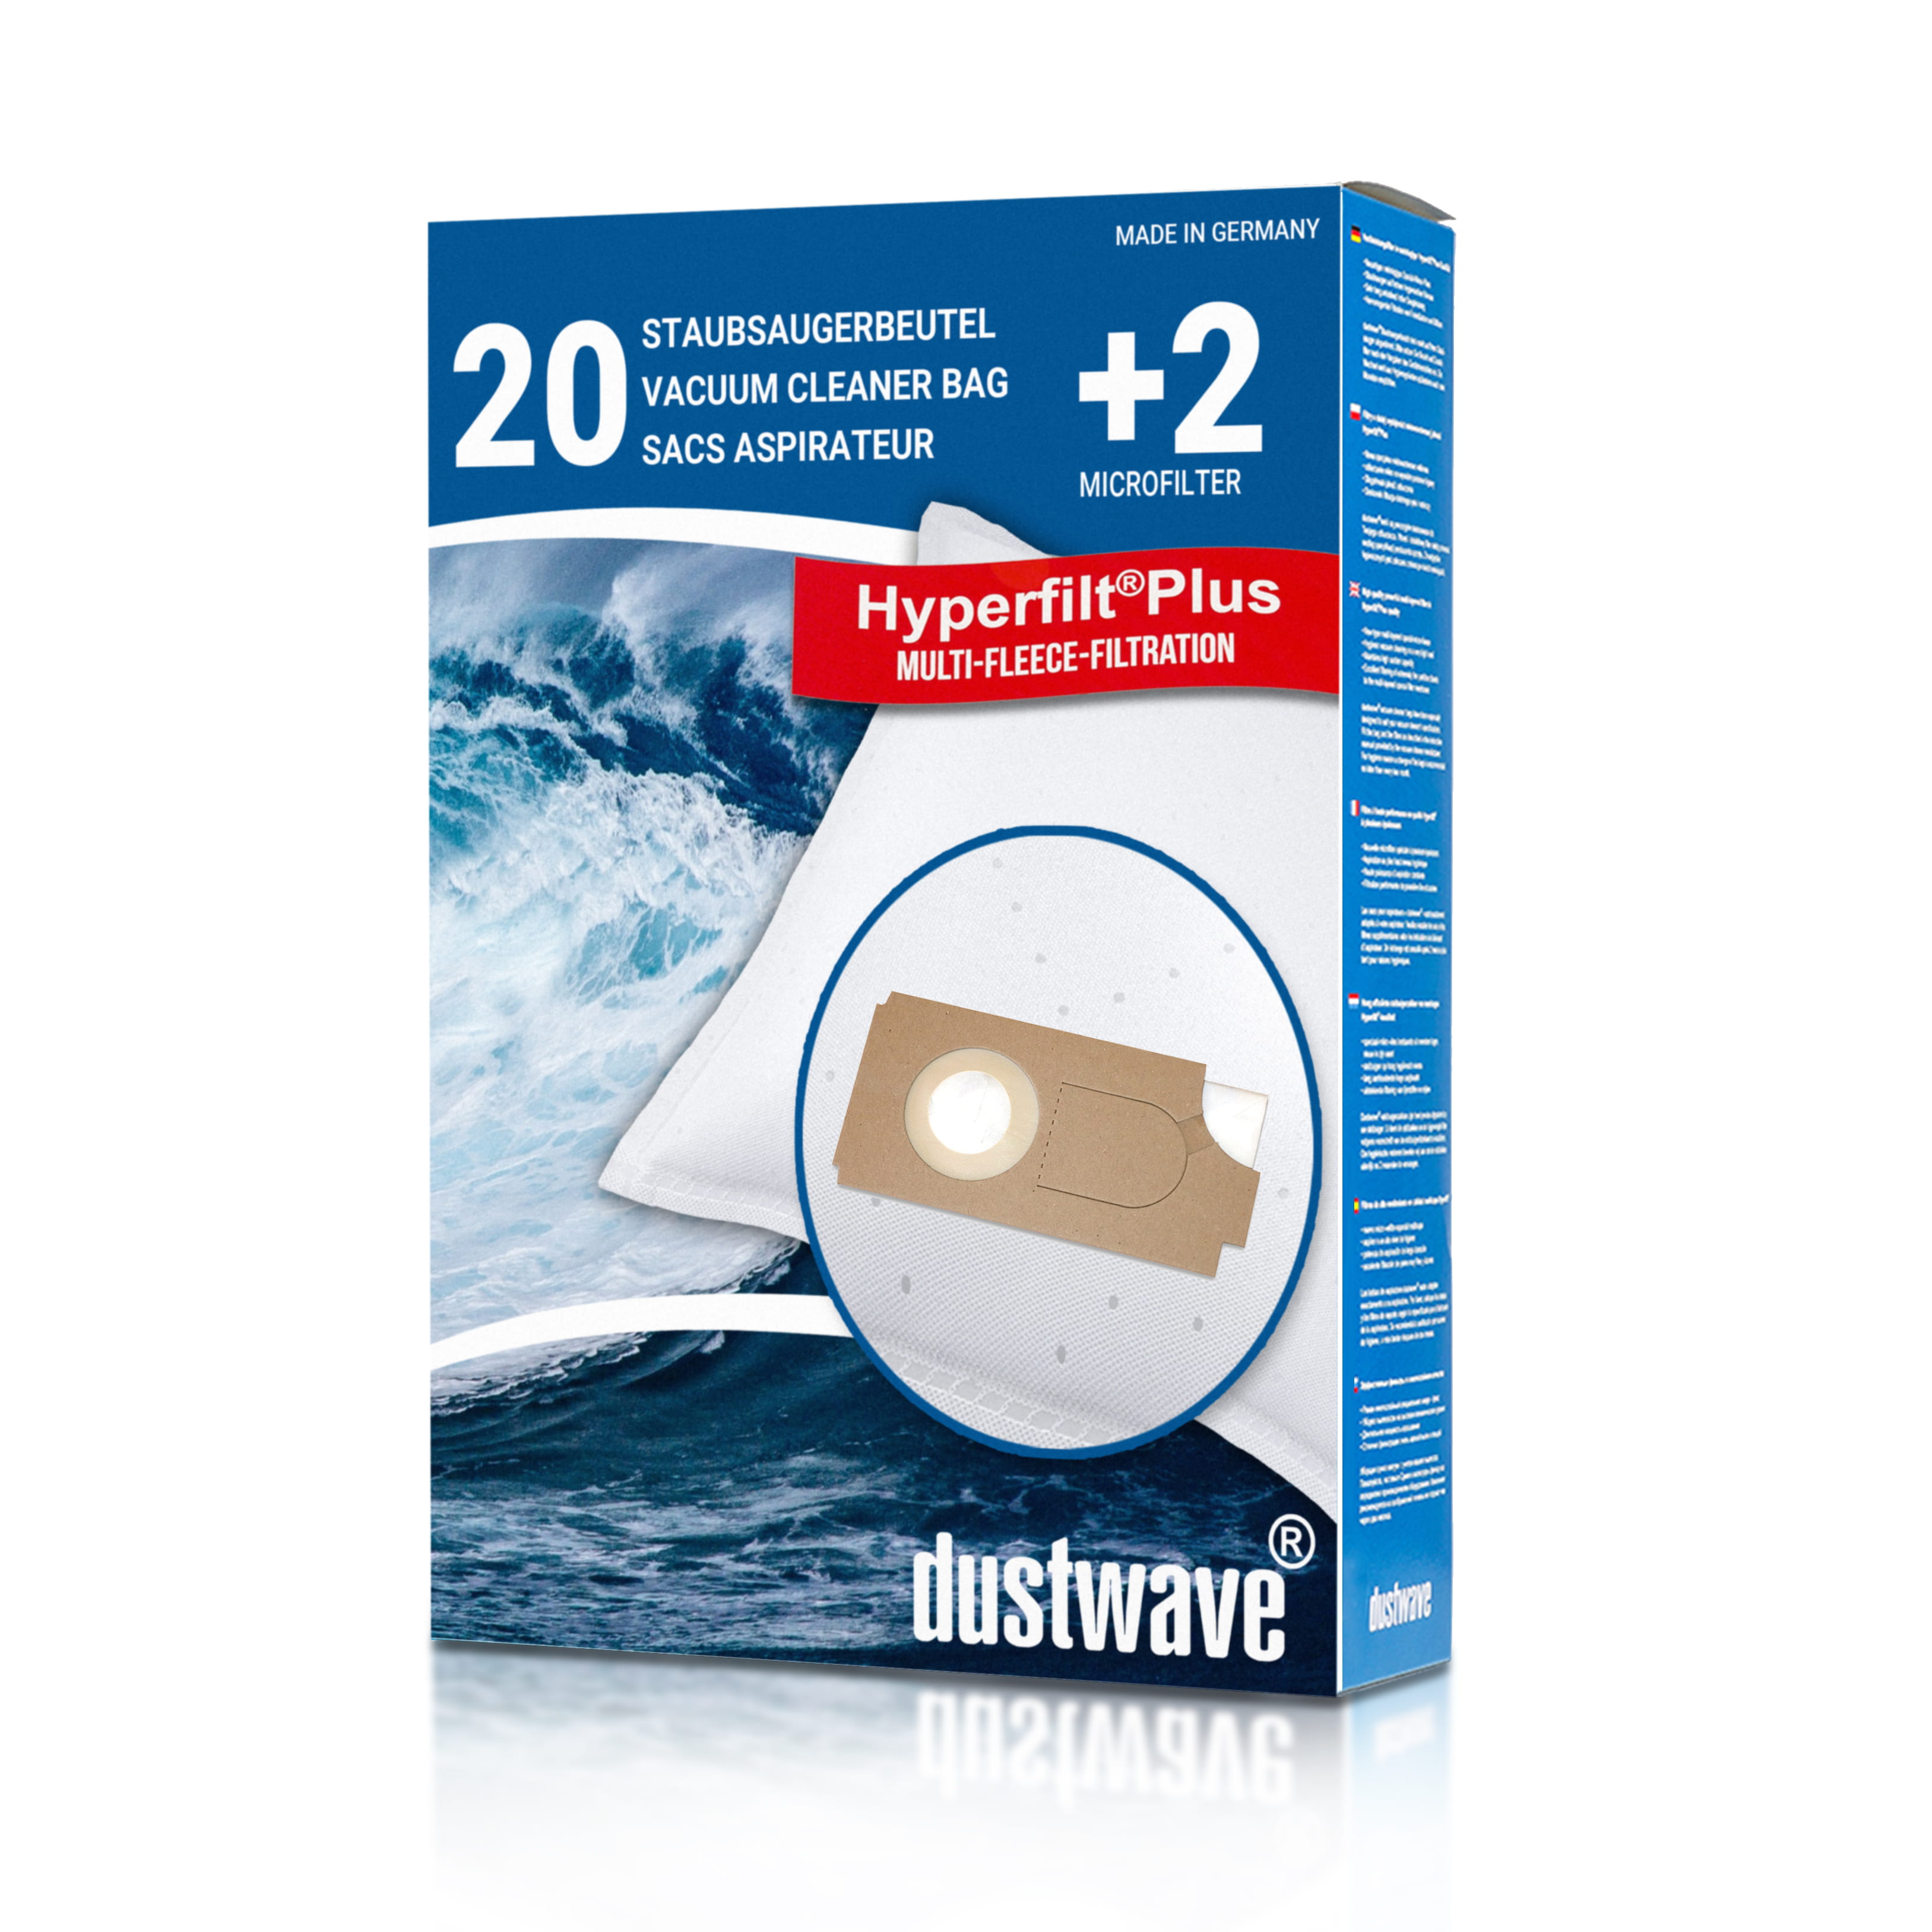 Dustwave® 20 Staubsaugerbeutel für Columbus 202 084 00 / 20208400 - hocheffizient mit Hygieneverschluss - Made in Germany